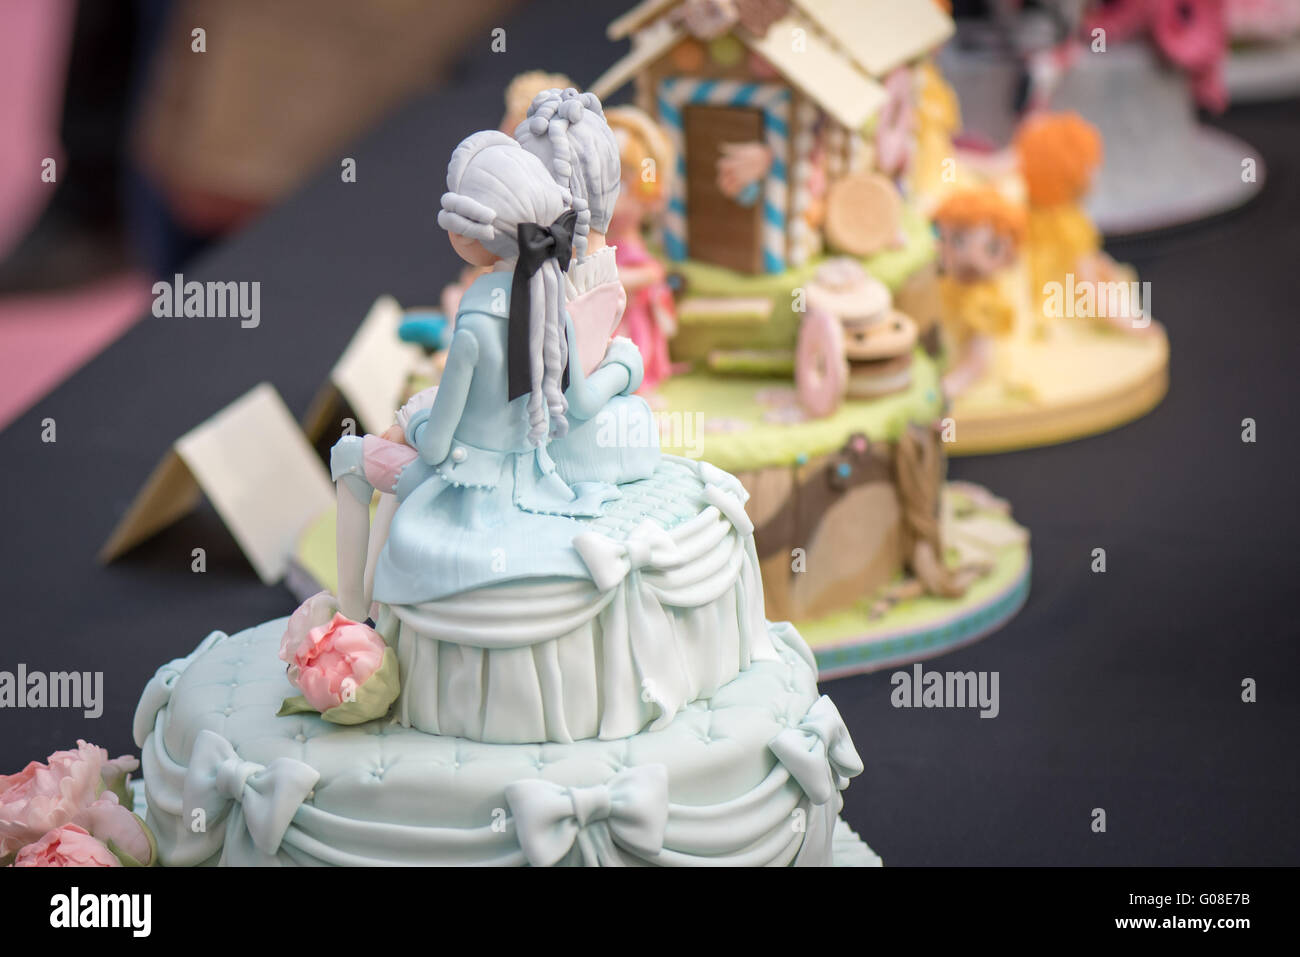 Decoración de pasteles franceses peluca par hombre mujer en pastel Internacional - El Sugarcraft, decoración de pasteles y hornear Show en Londres Foto de stock